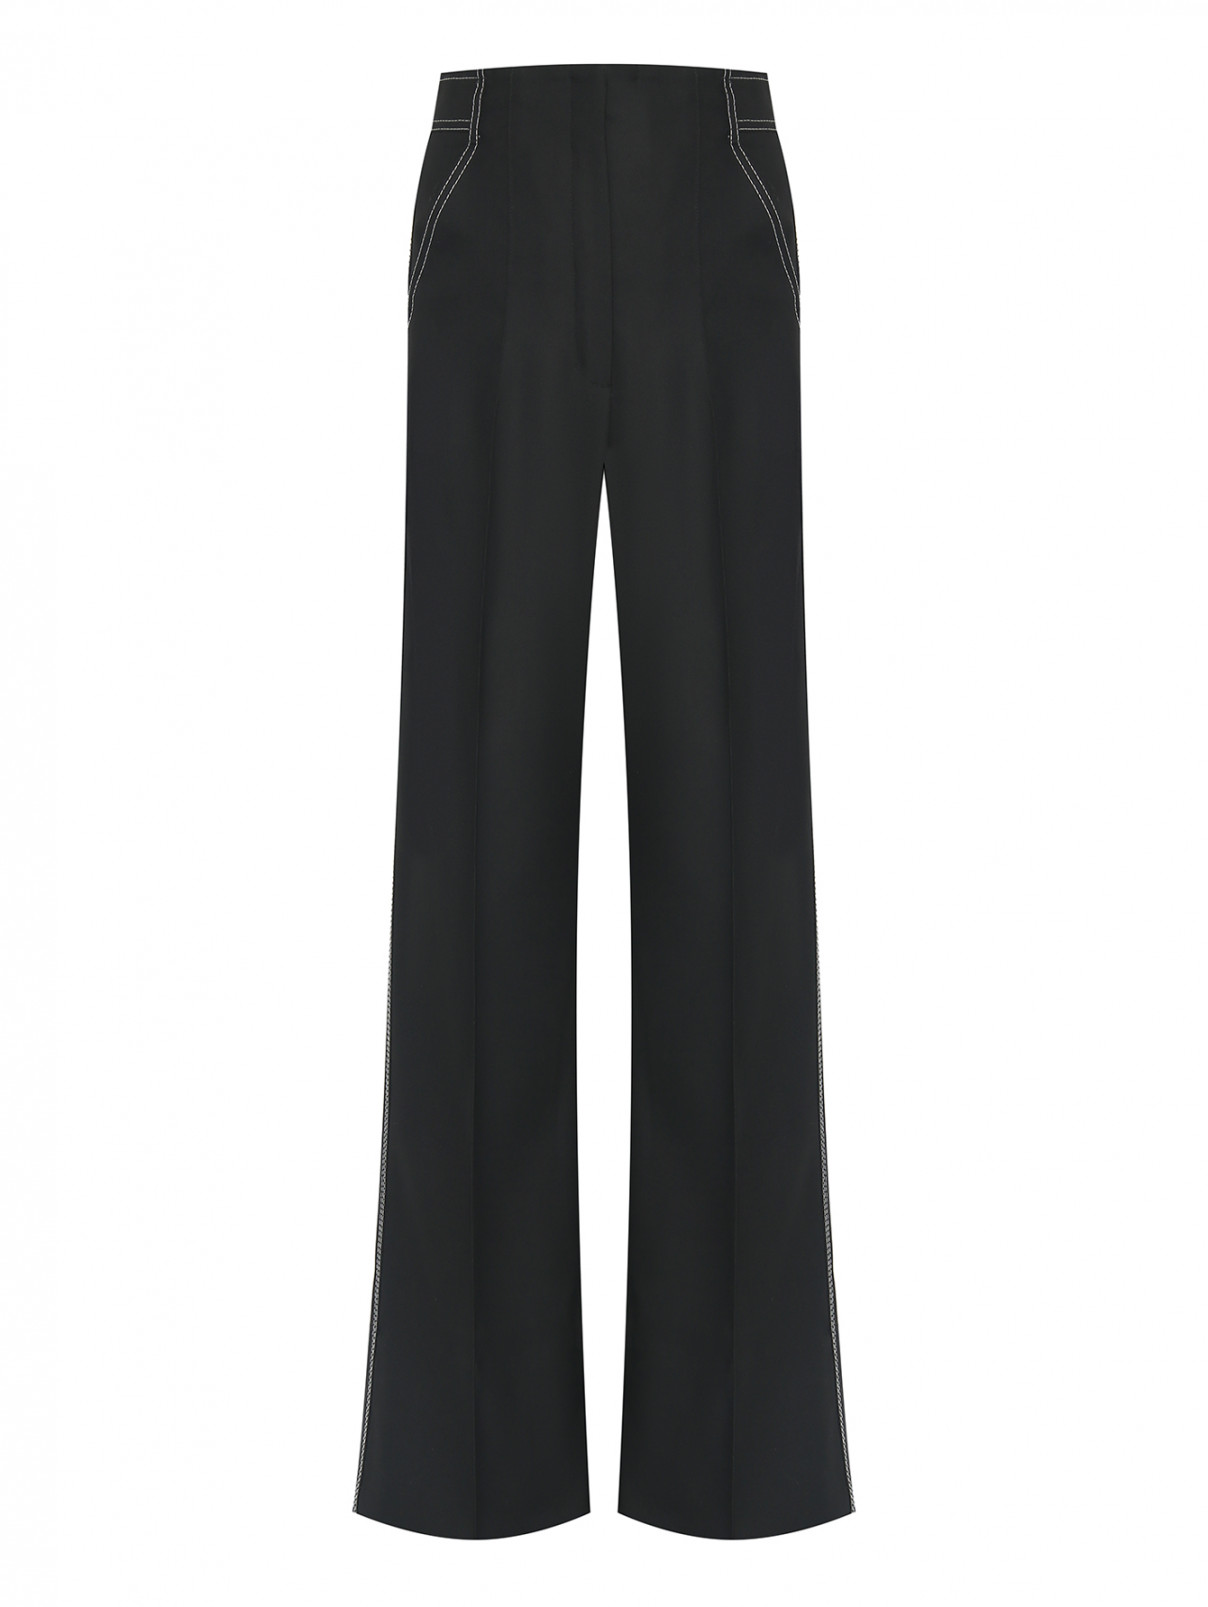 Широкие брюки с отстрочкой Dorothee Schumacher  –  Общий вид  – Цвет:  Черный